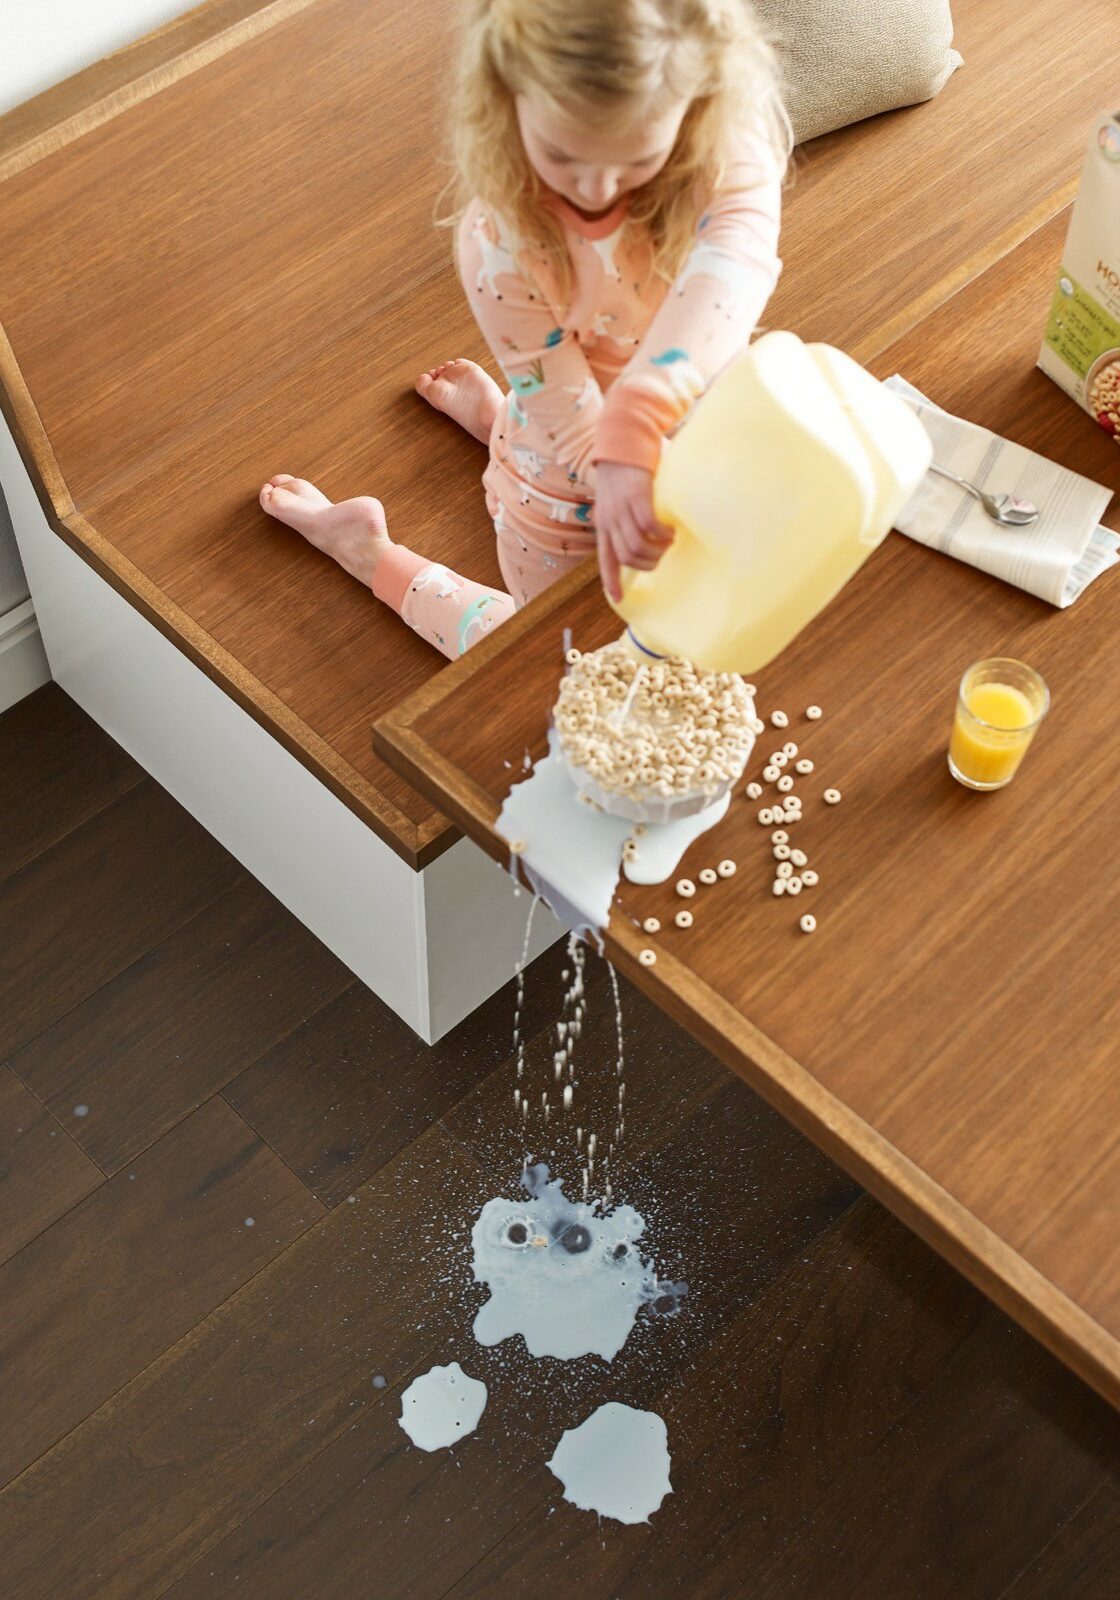 Milk spill cleaning | Panter's Hardwood Floors & More